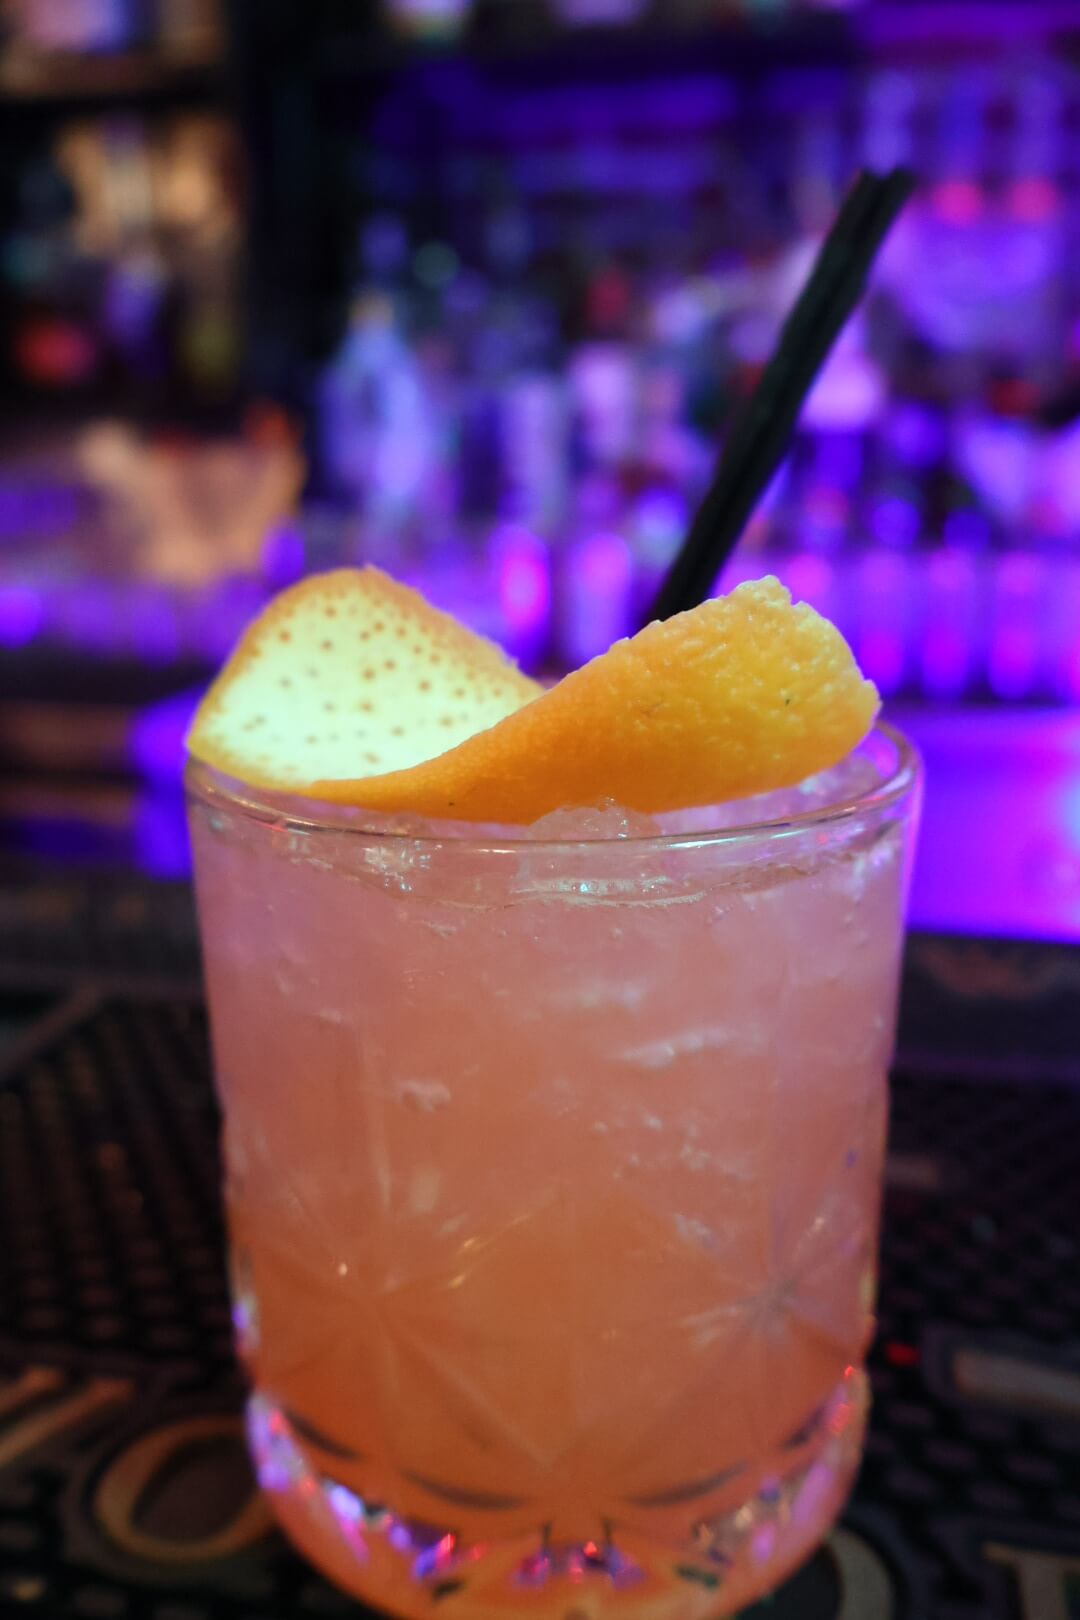 Cocktail with orange garnish